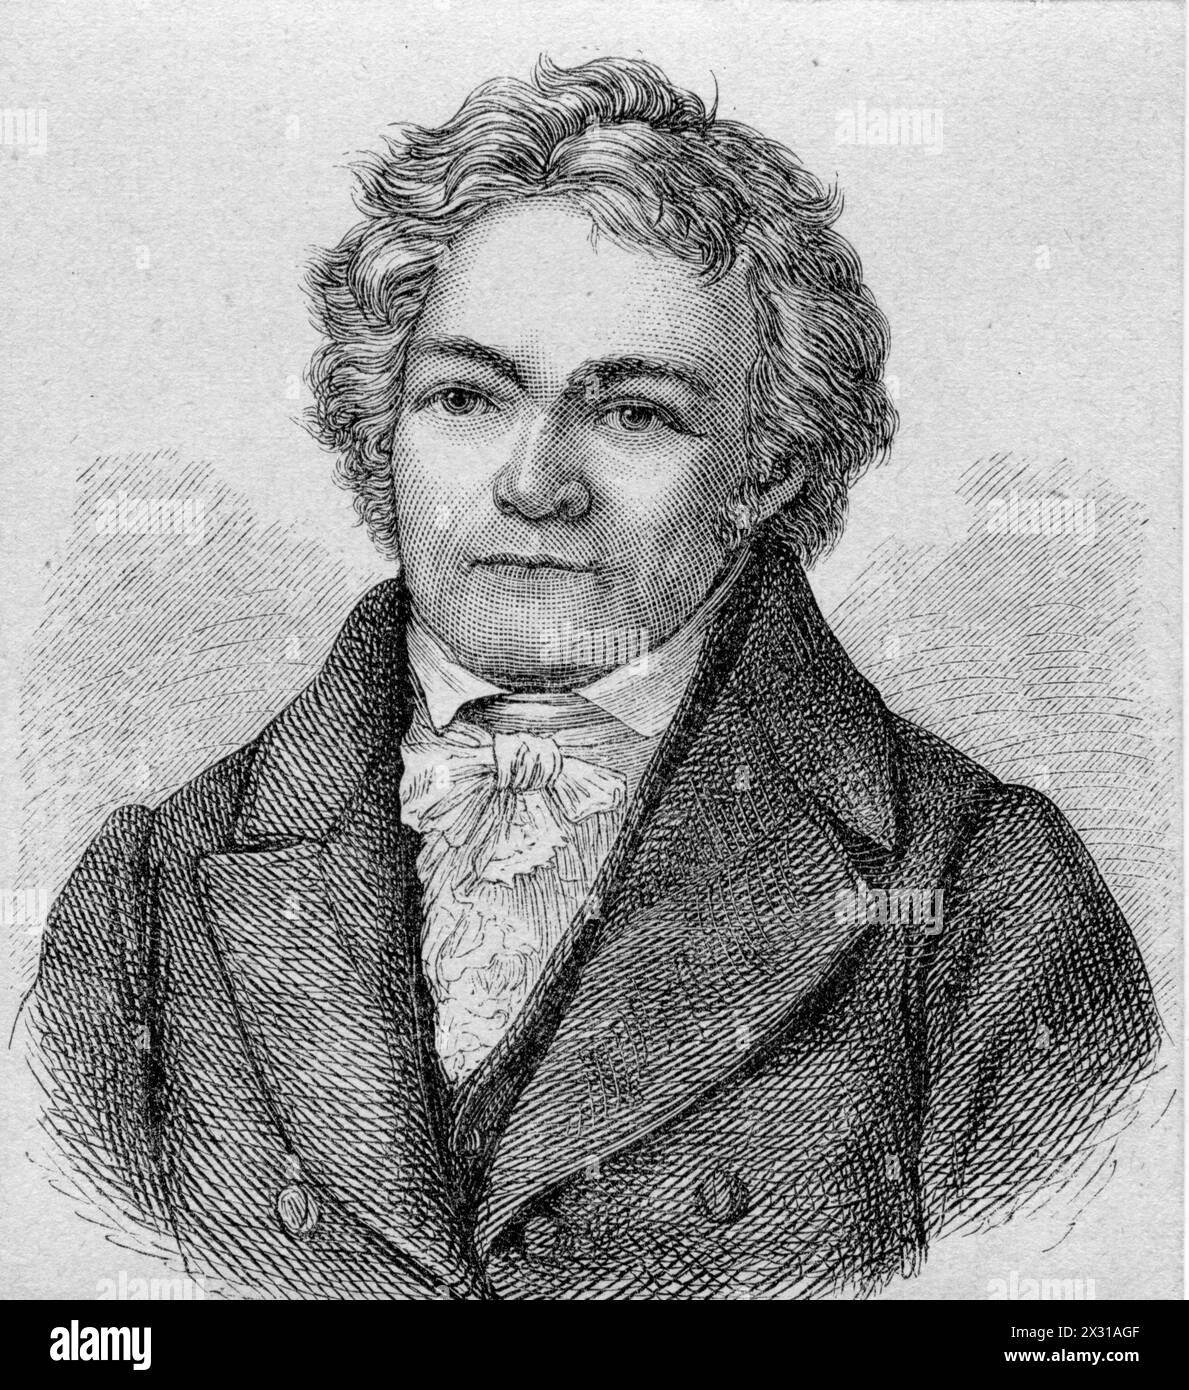 Senefelder, Alois, 6.11.1771 - 26.2,1834, imprimeur et inventeur autrichien, ADDITIONAL-RIGHTS-LEARANCE-INFO-NOT-AVAILABLE Banque D'Images